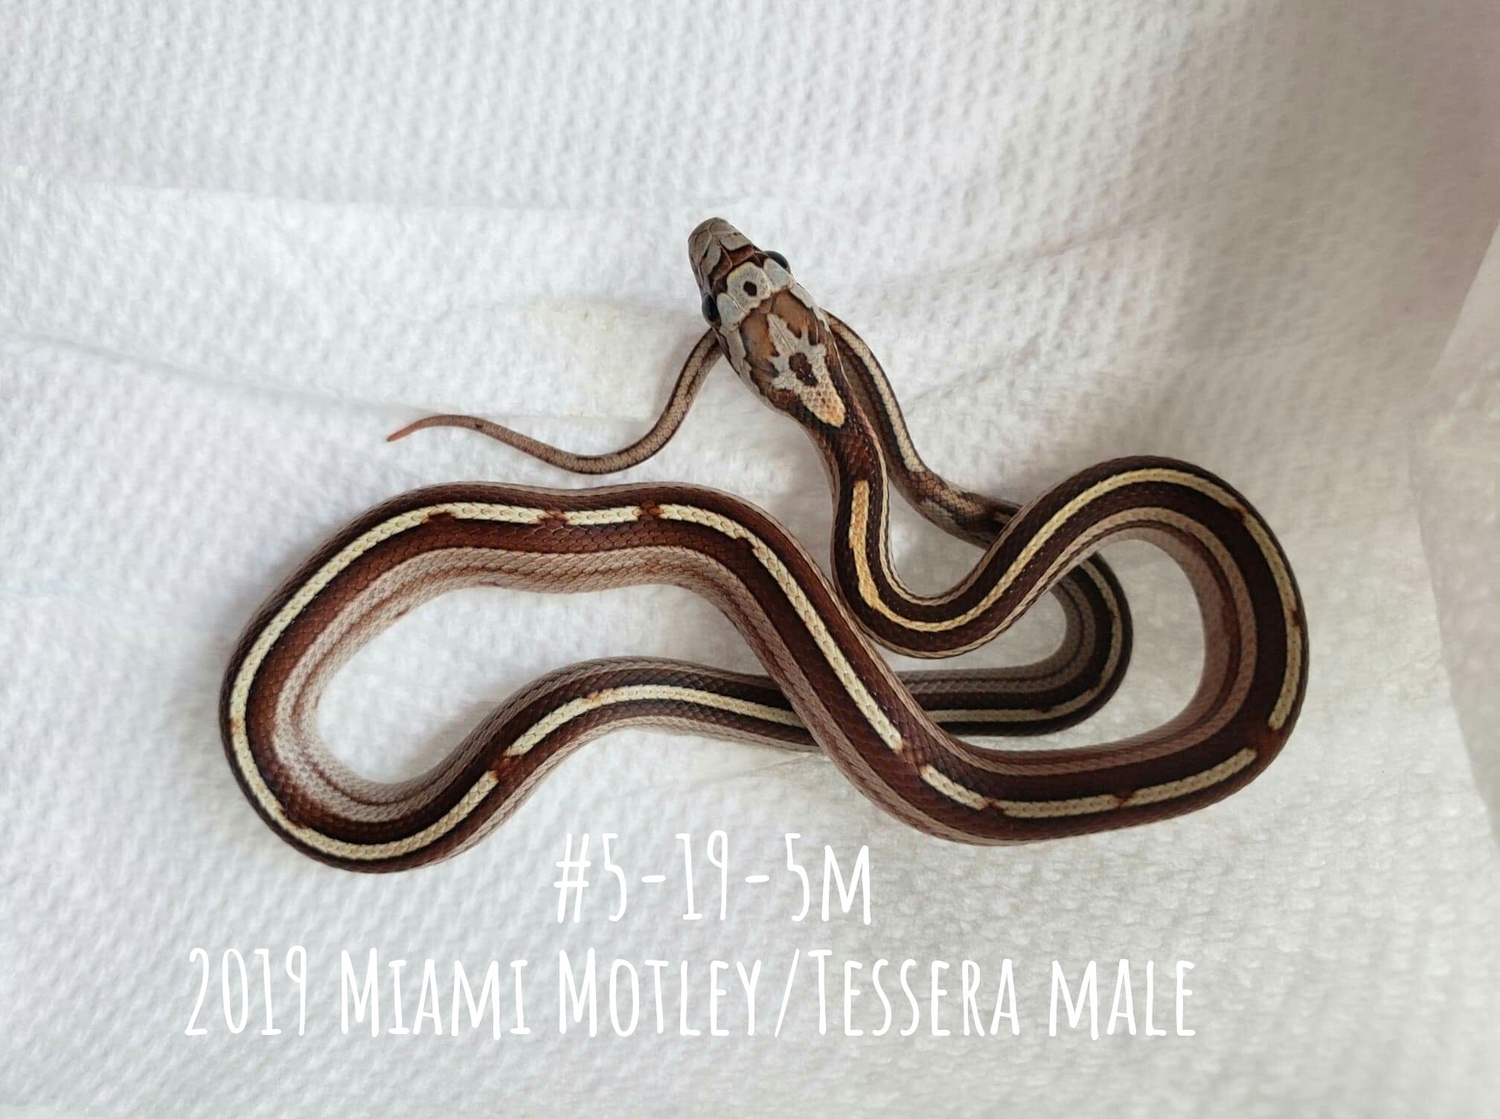 Miami Motley Tessera Corn Snake by ECW Reptiles